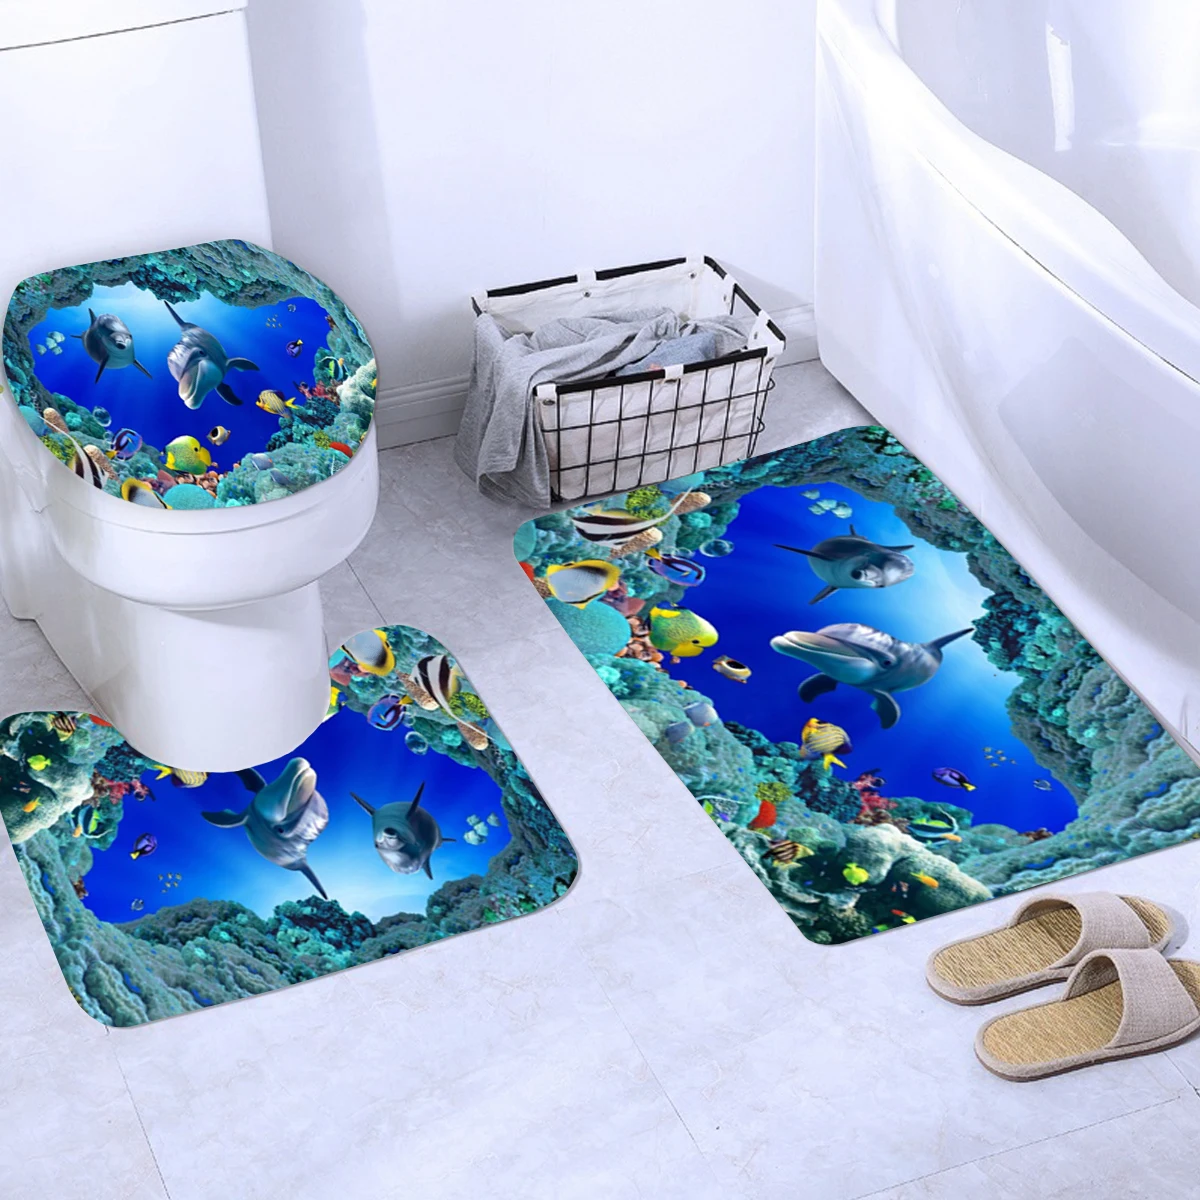 Океан дизайн дельфин 4 в 1 водонепроницаемый ткань Ванная комната 3D Душ шторы набор с нескользящей Туалет крышка коврики украшения дома - Цвет: D 3PCS